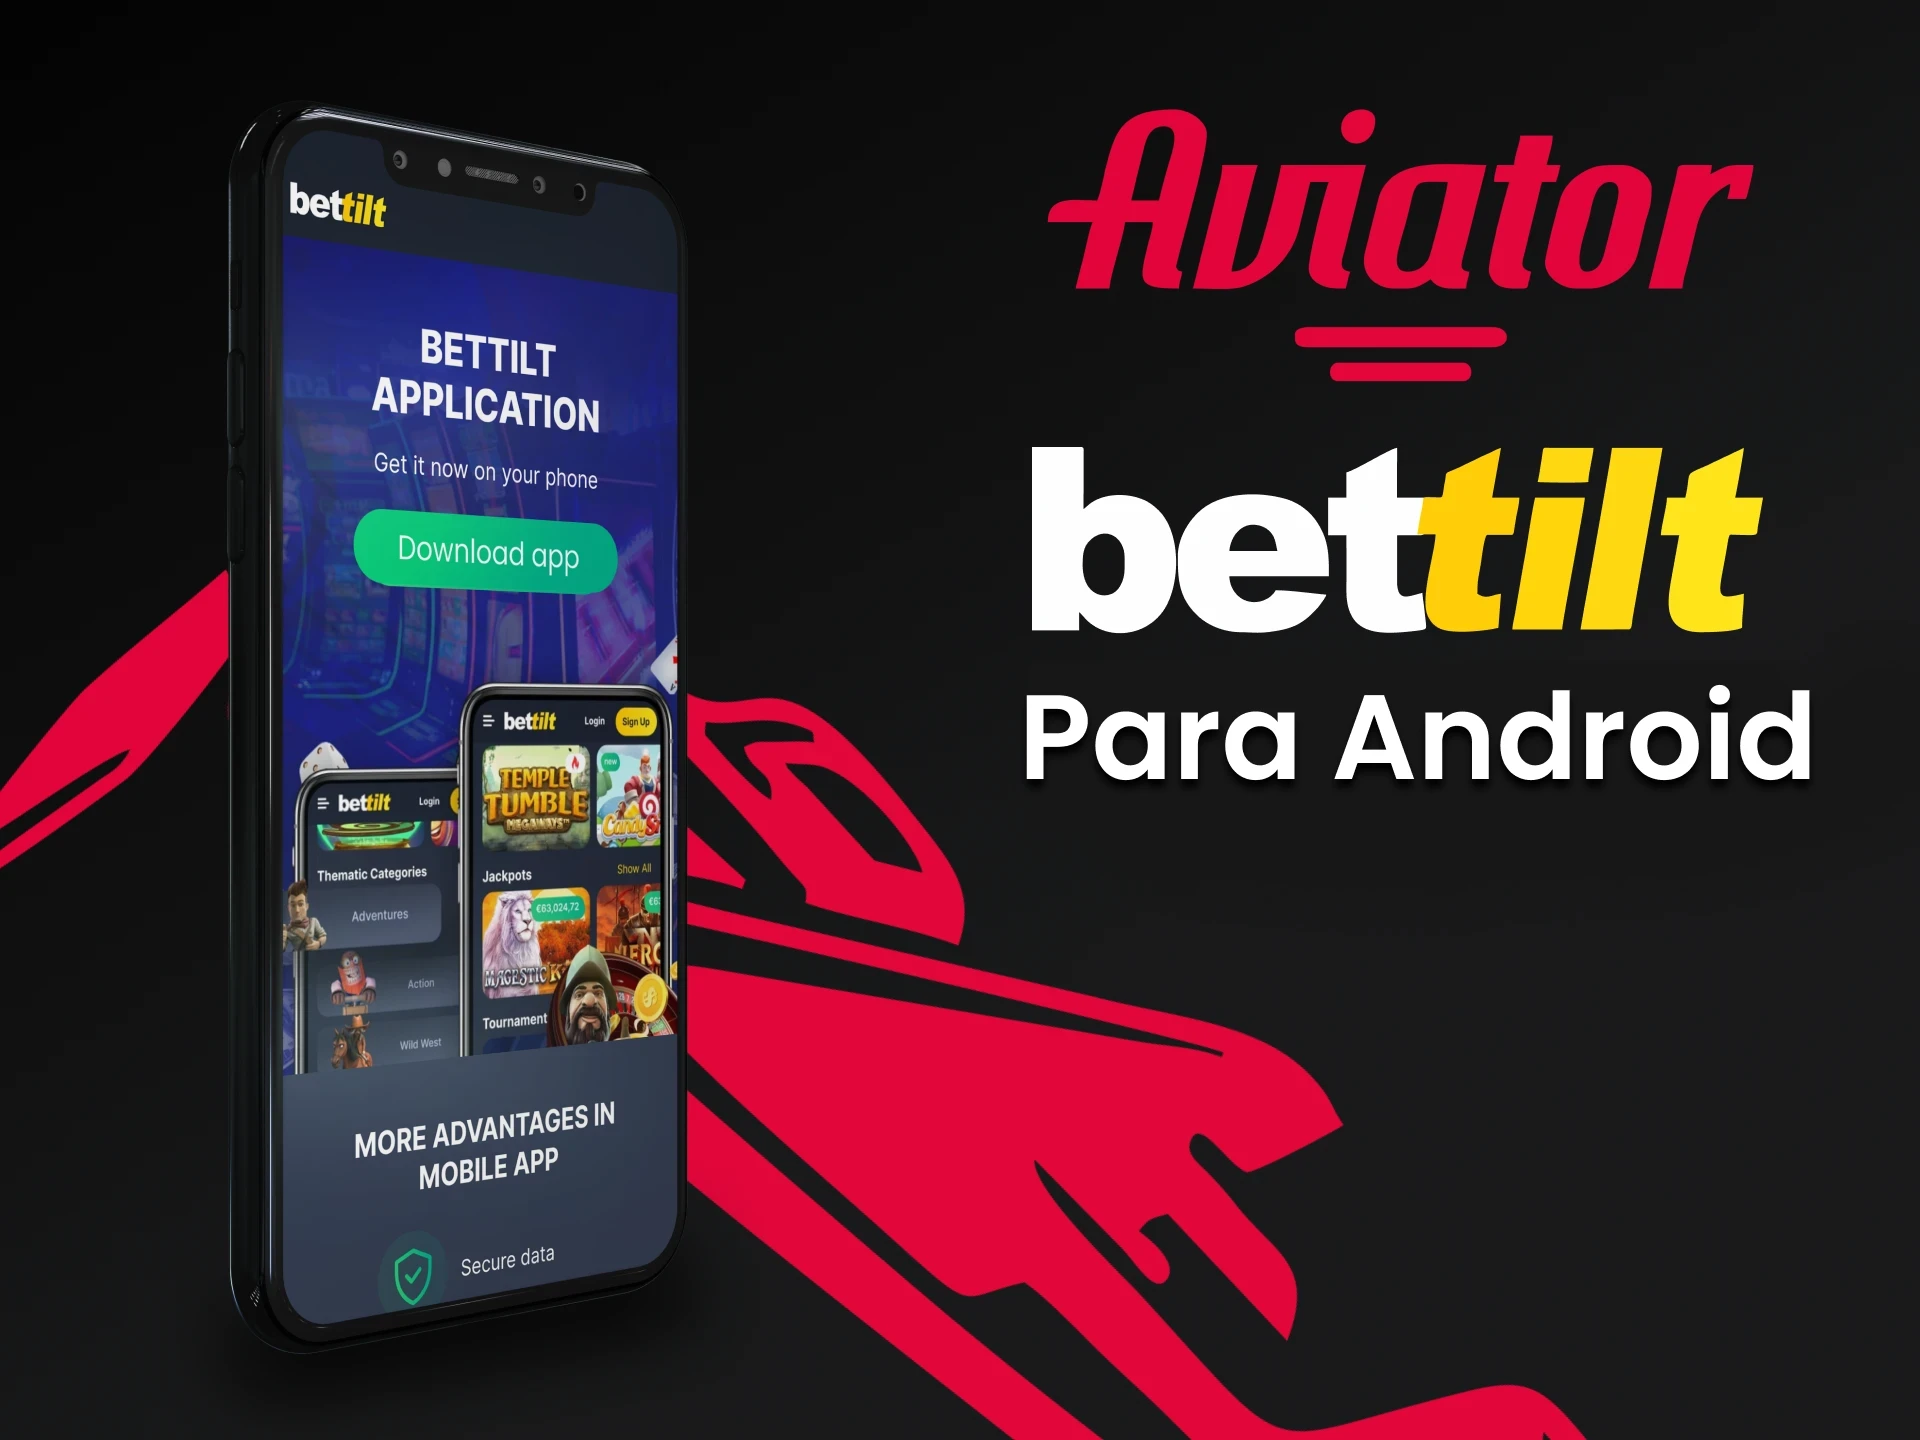  Baixe o Bettilt no Android para jogar o Aviator.